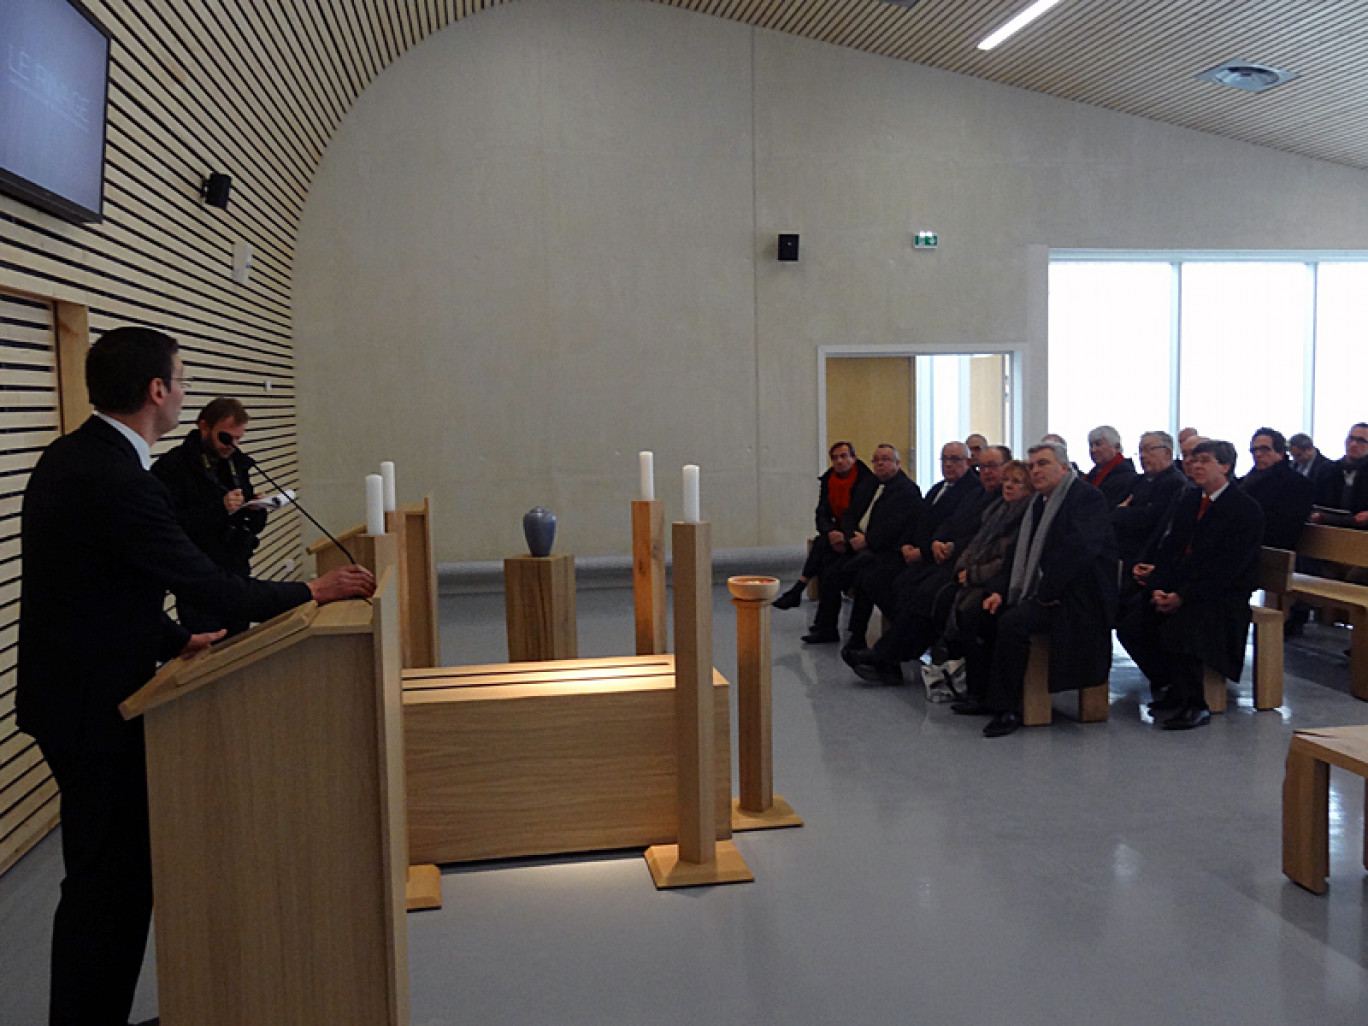 Le nouveau crématorium de la Côte d'Opale est entré en service le 1er mars, en présence des élus de l'agglomération boulonnaise.